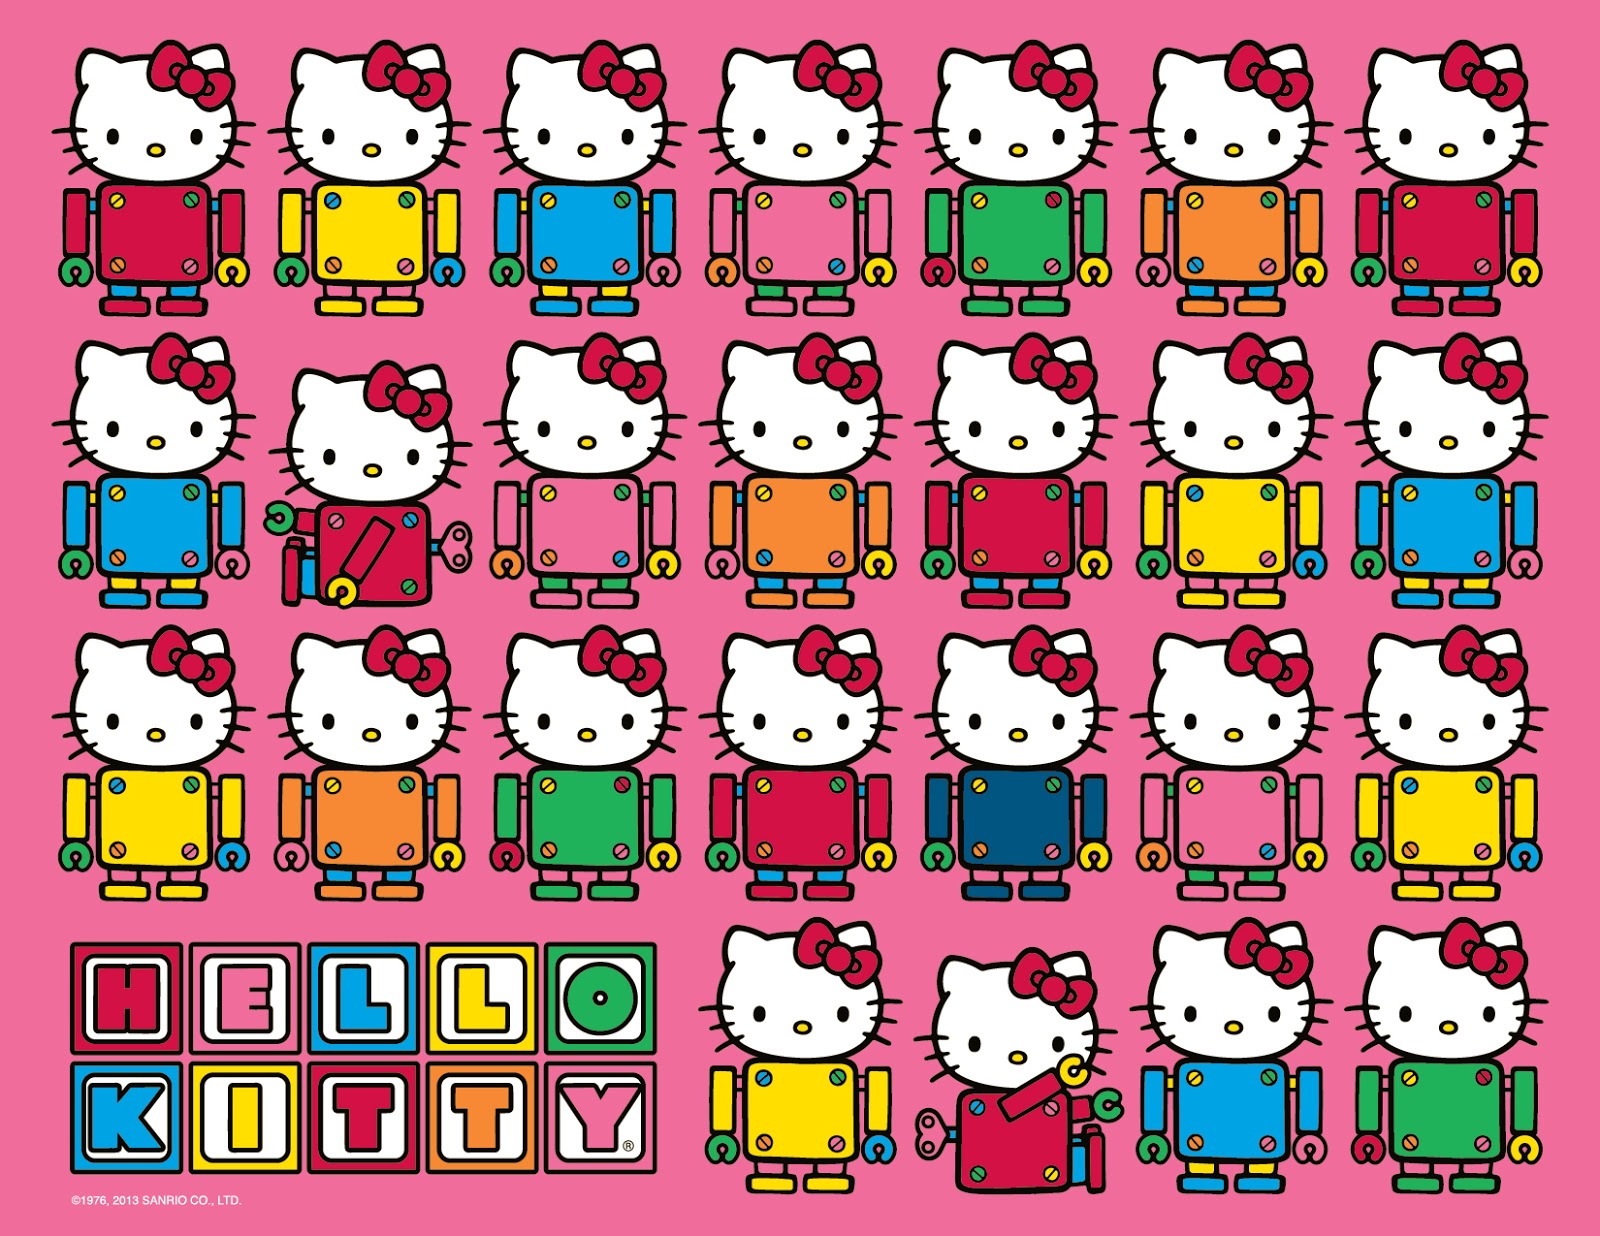 Hello Kitty Wallpaper Miissdevil